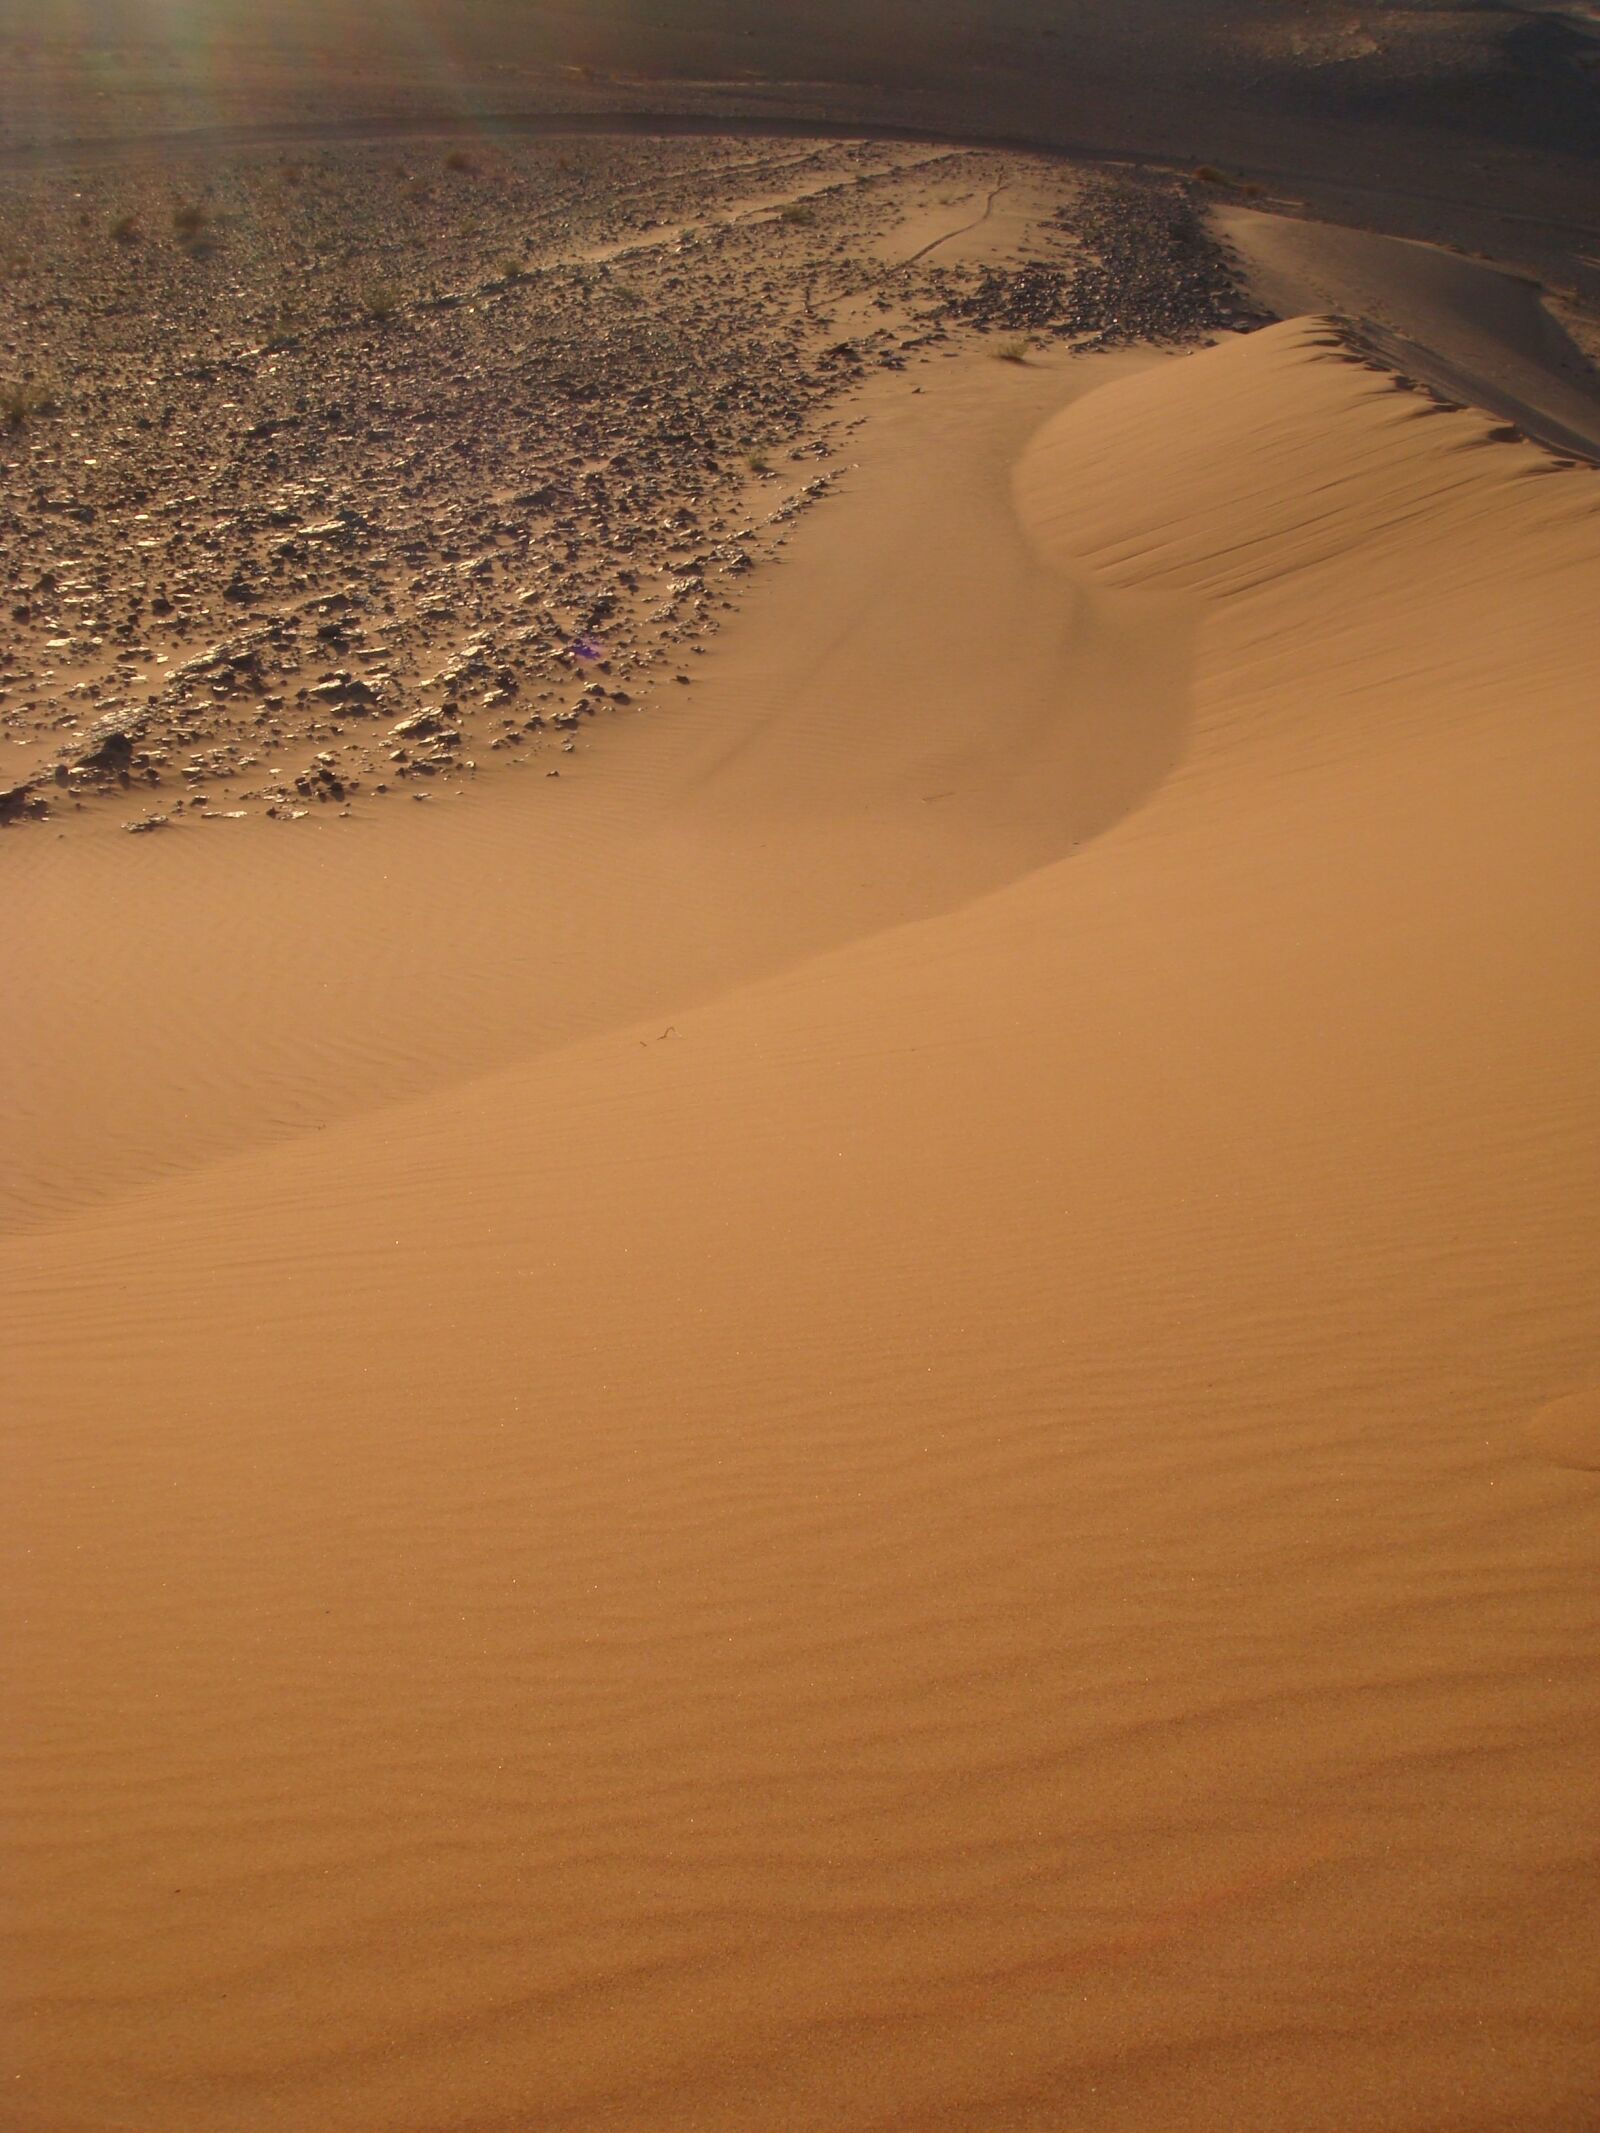 Sony DSC-T70 sample photo. Sand dune, sahara, desert photography